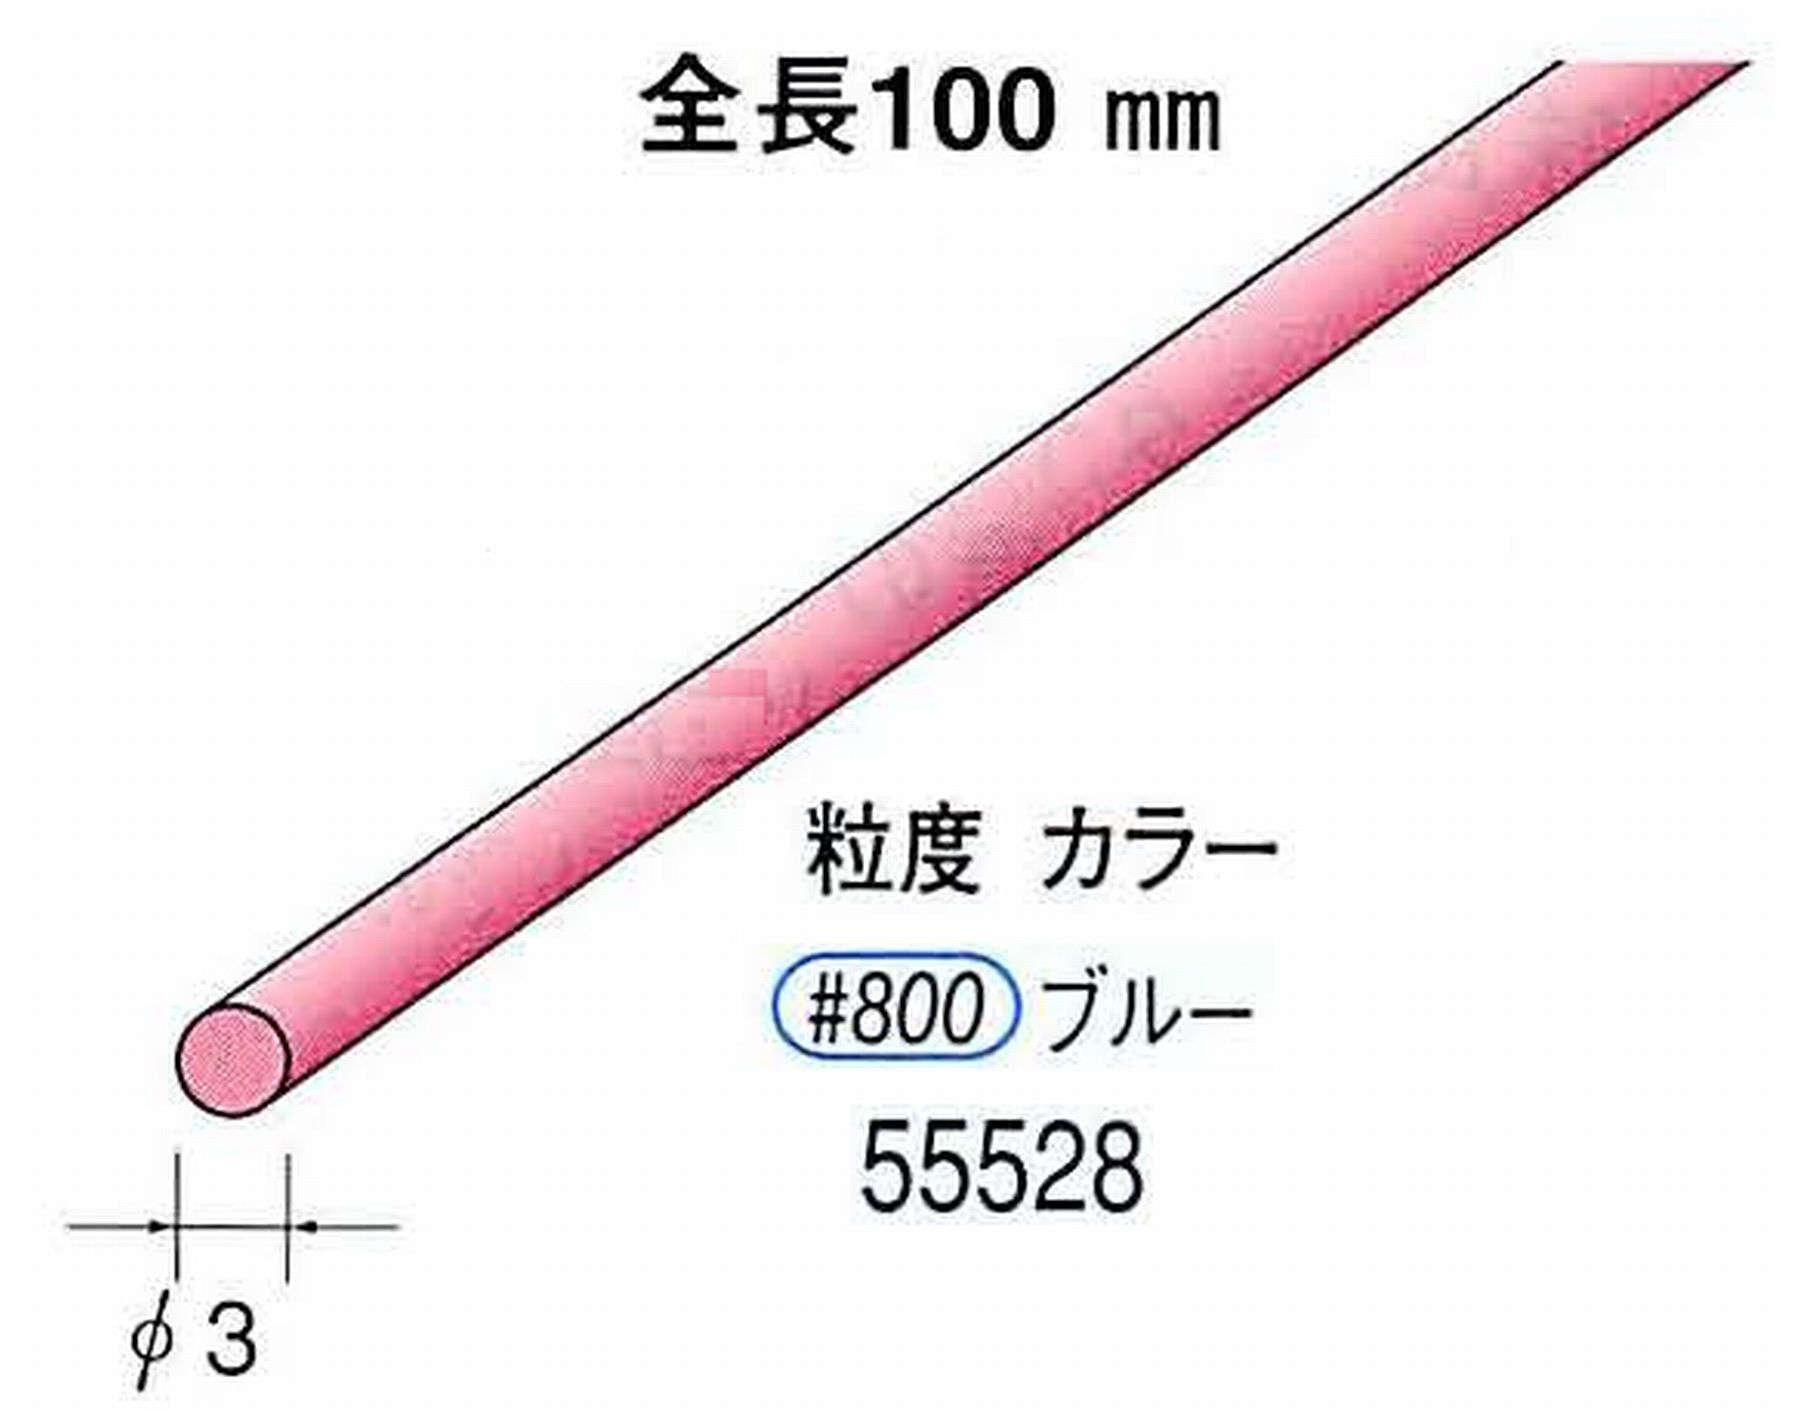 ナカニシ/NAKANISHI セラファイバー砥石 全長100mm ブルー φ3mm 55528